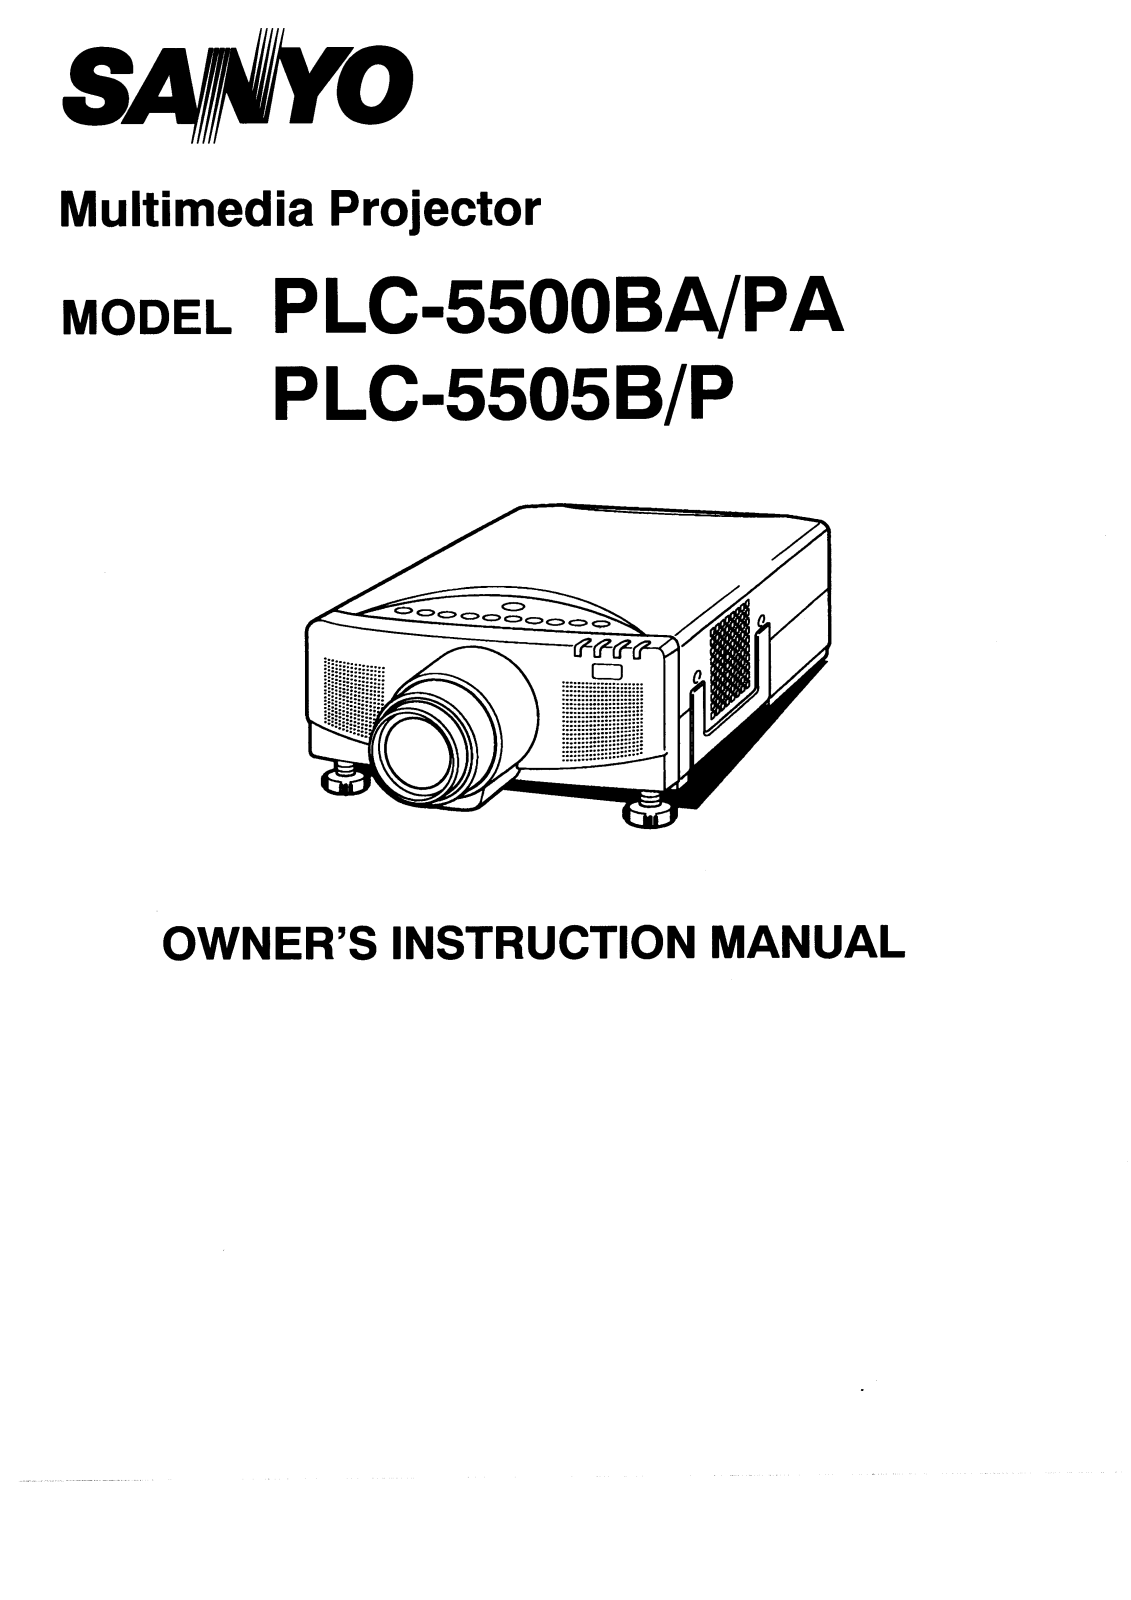 Sanyo PLC-5500BA, PLC-5500PA, PLC-5505B, PLC-5505P Instruction Manual